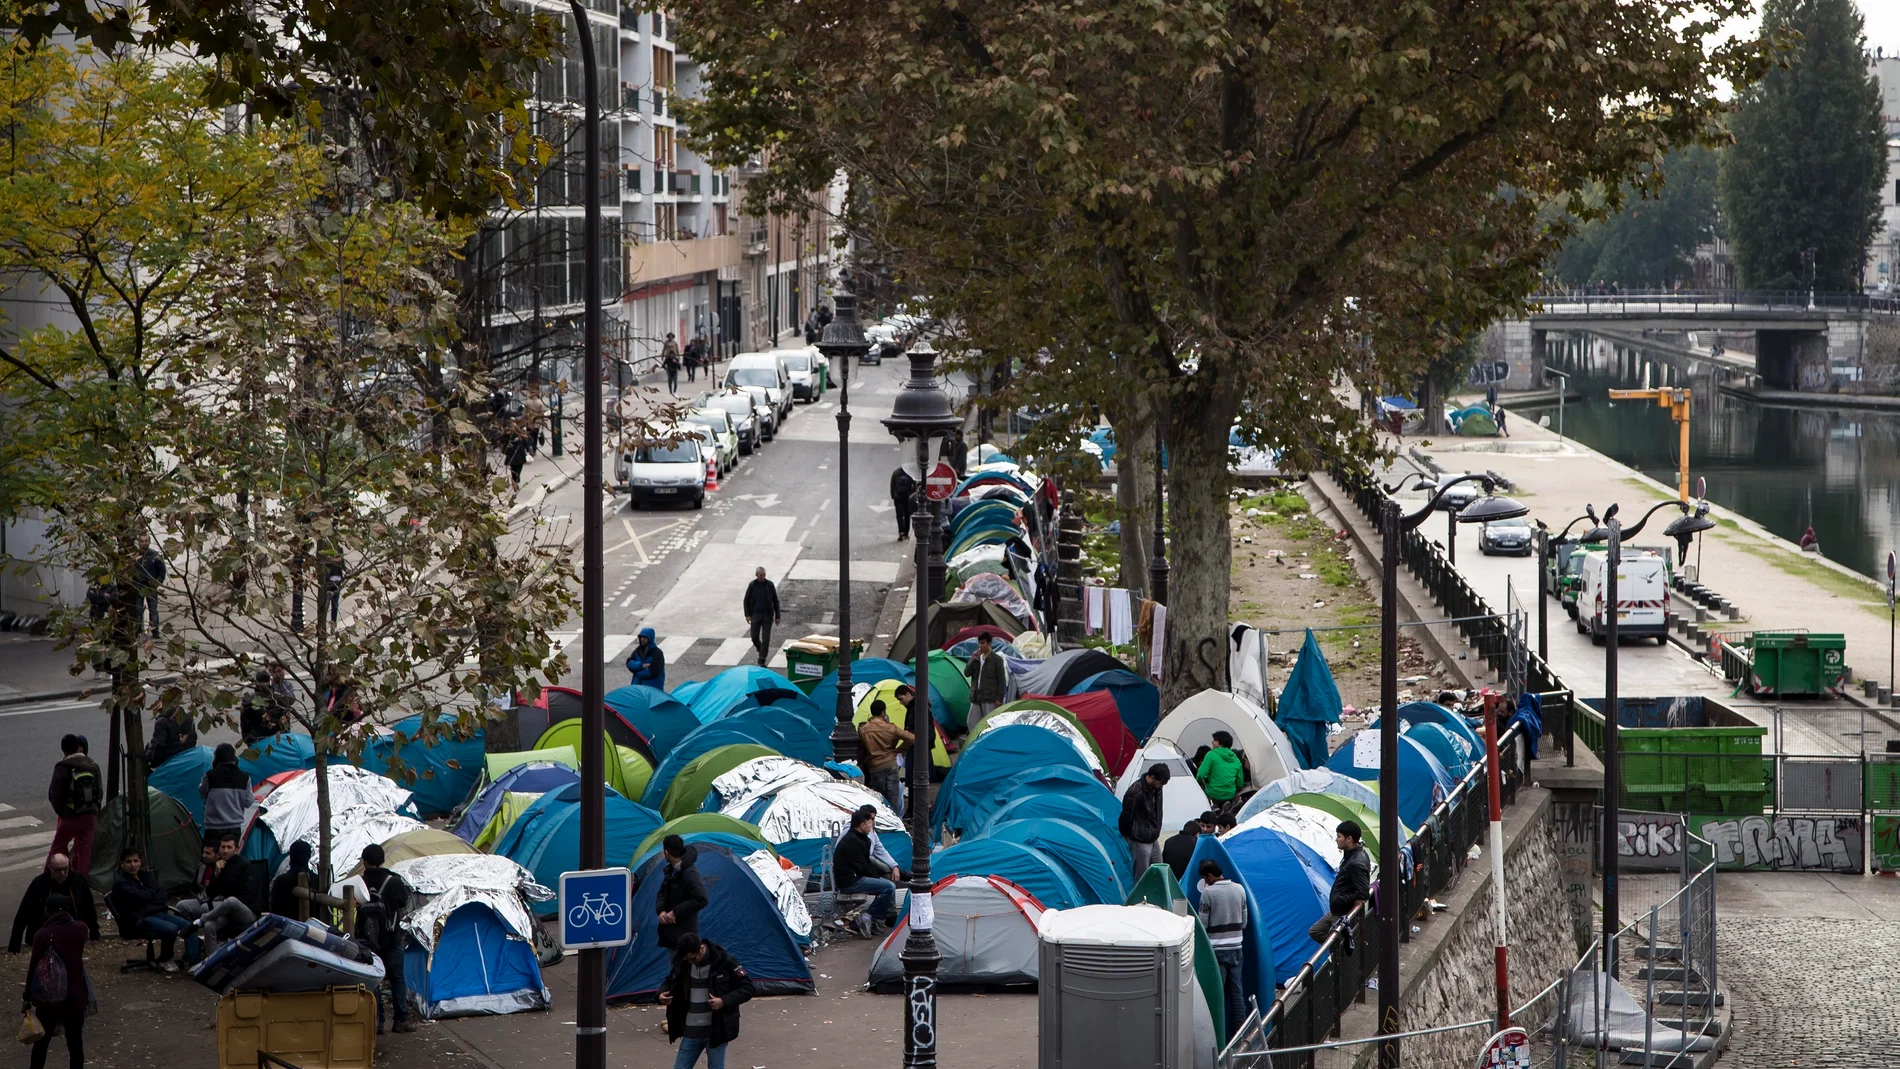 Varios inmigrantes junto a sus tiendas de campaña en un campamento cerca de las estaciones en París, Francia